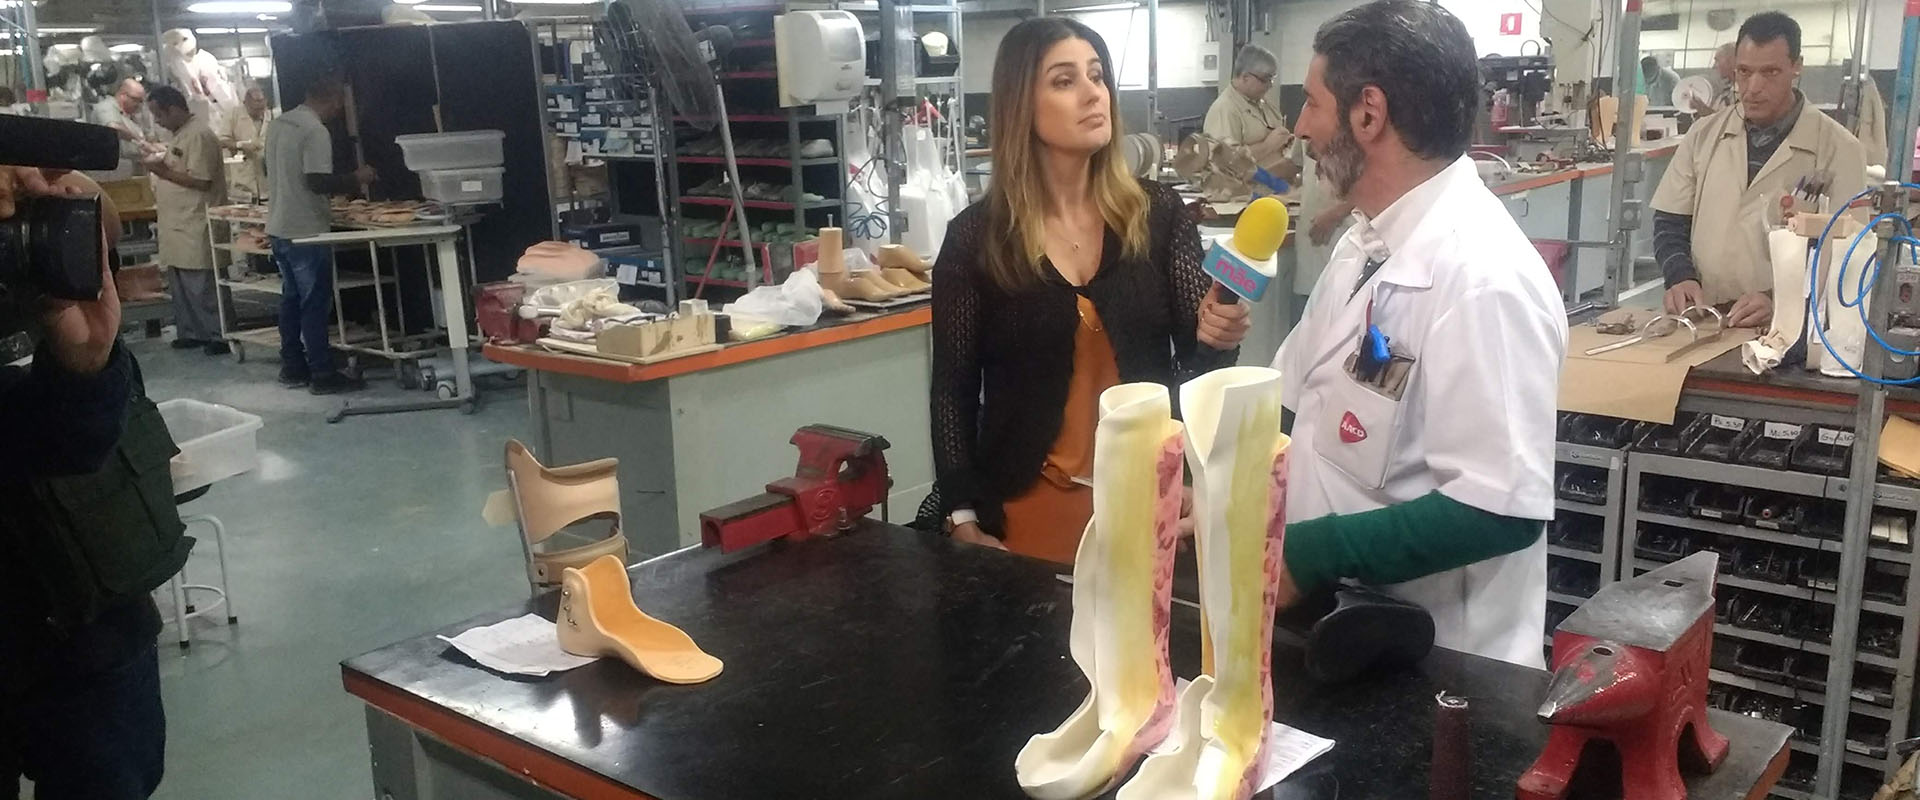 Entrevista sobre próteses